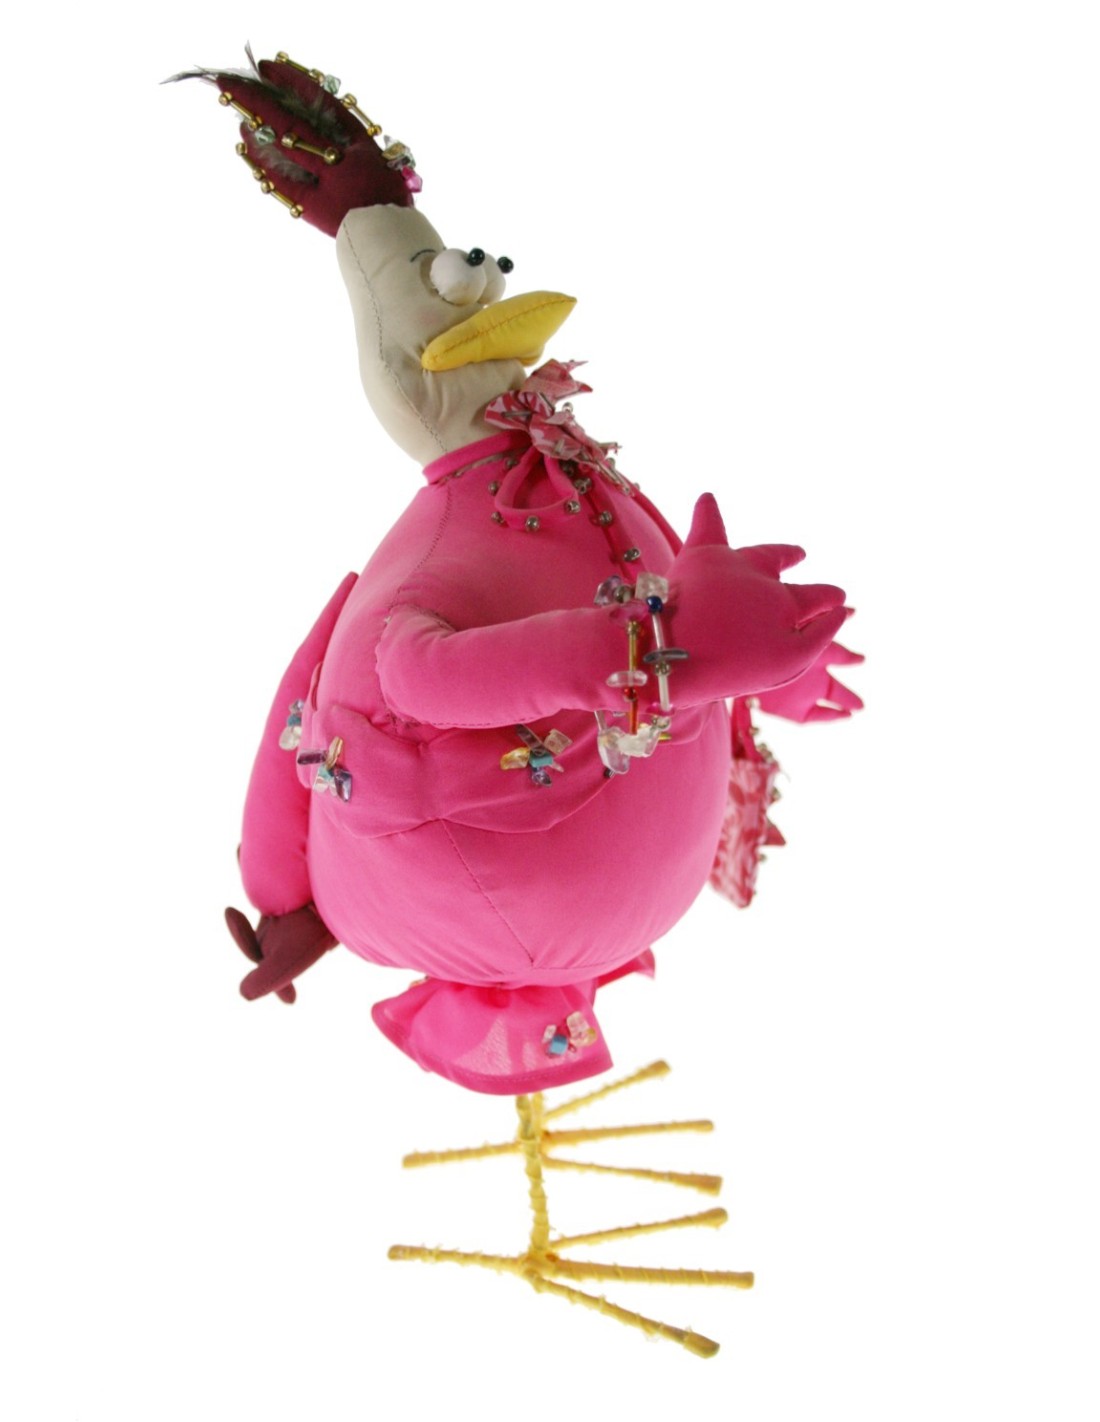 Muñeco de trapo forma de gallina de color rosa